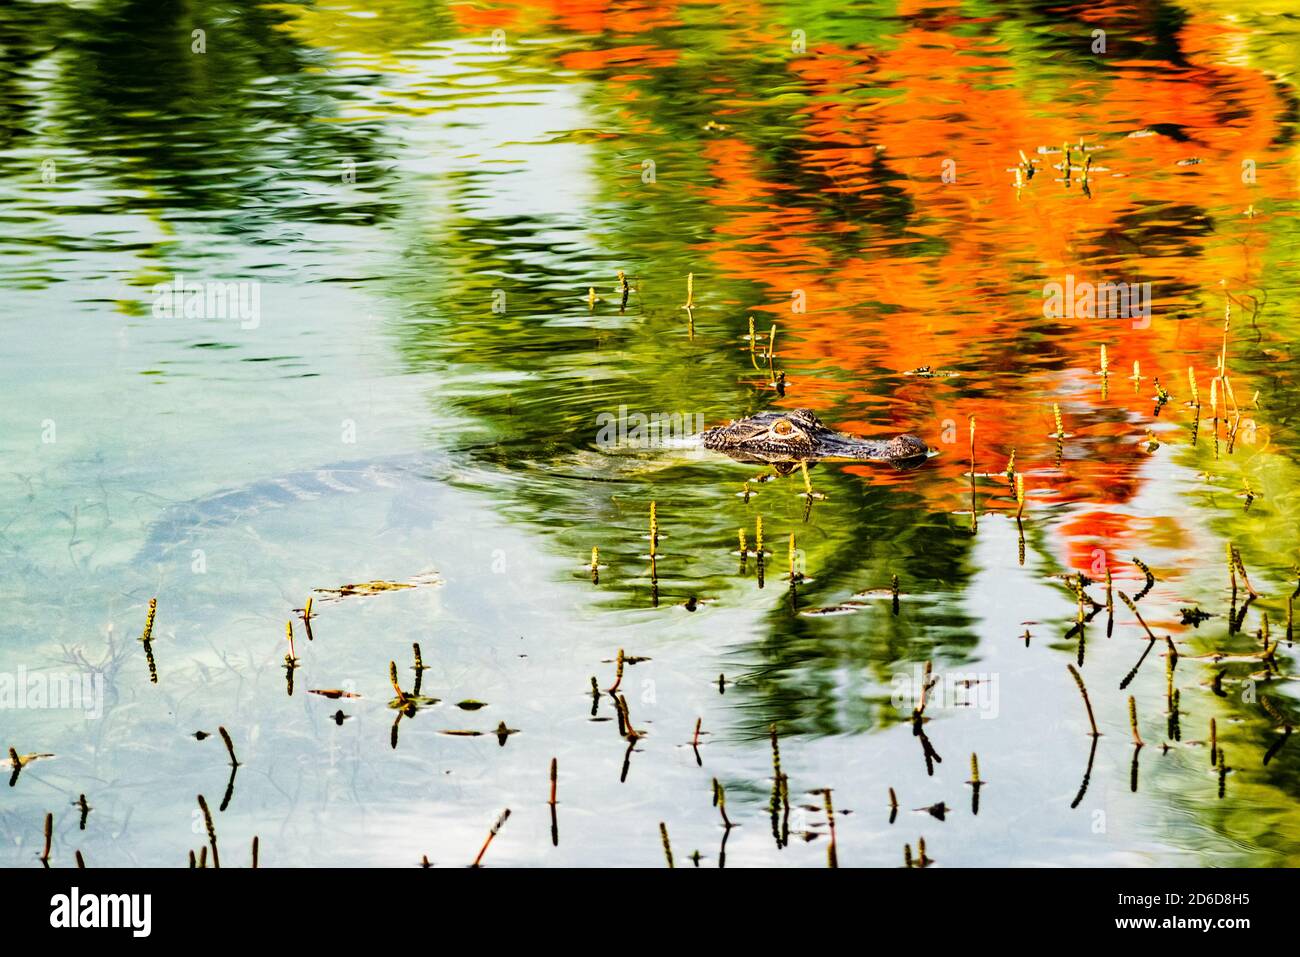 Jeune alligator nageant dans un lac d'eau douce avec des reflets d'arbres de flamme dans l'eau Banque D'Images